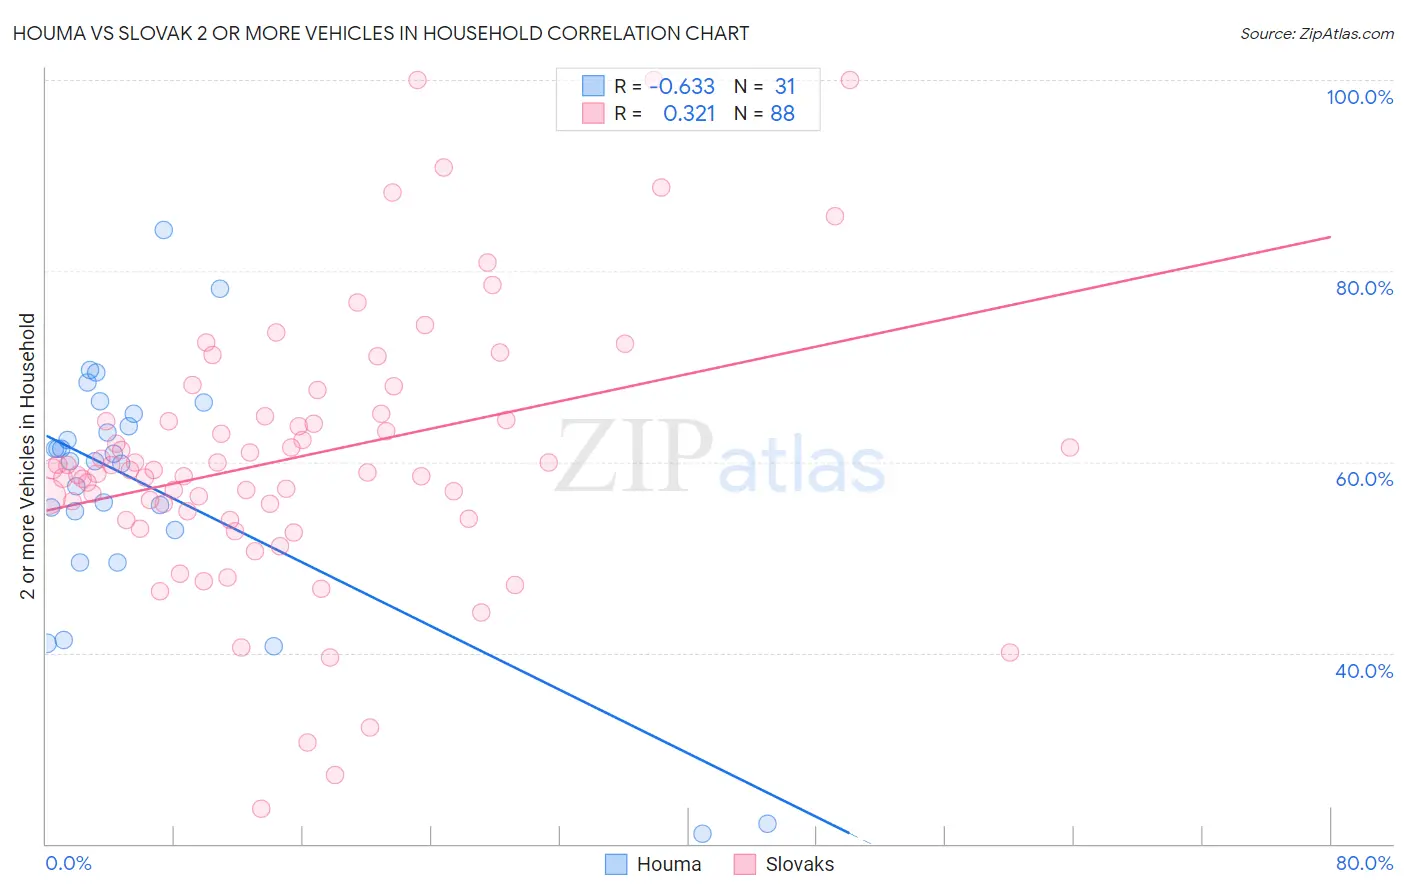 Houma vs Slovak 2 or more Vehicles in Household